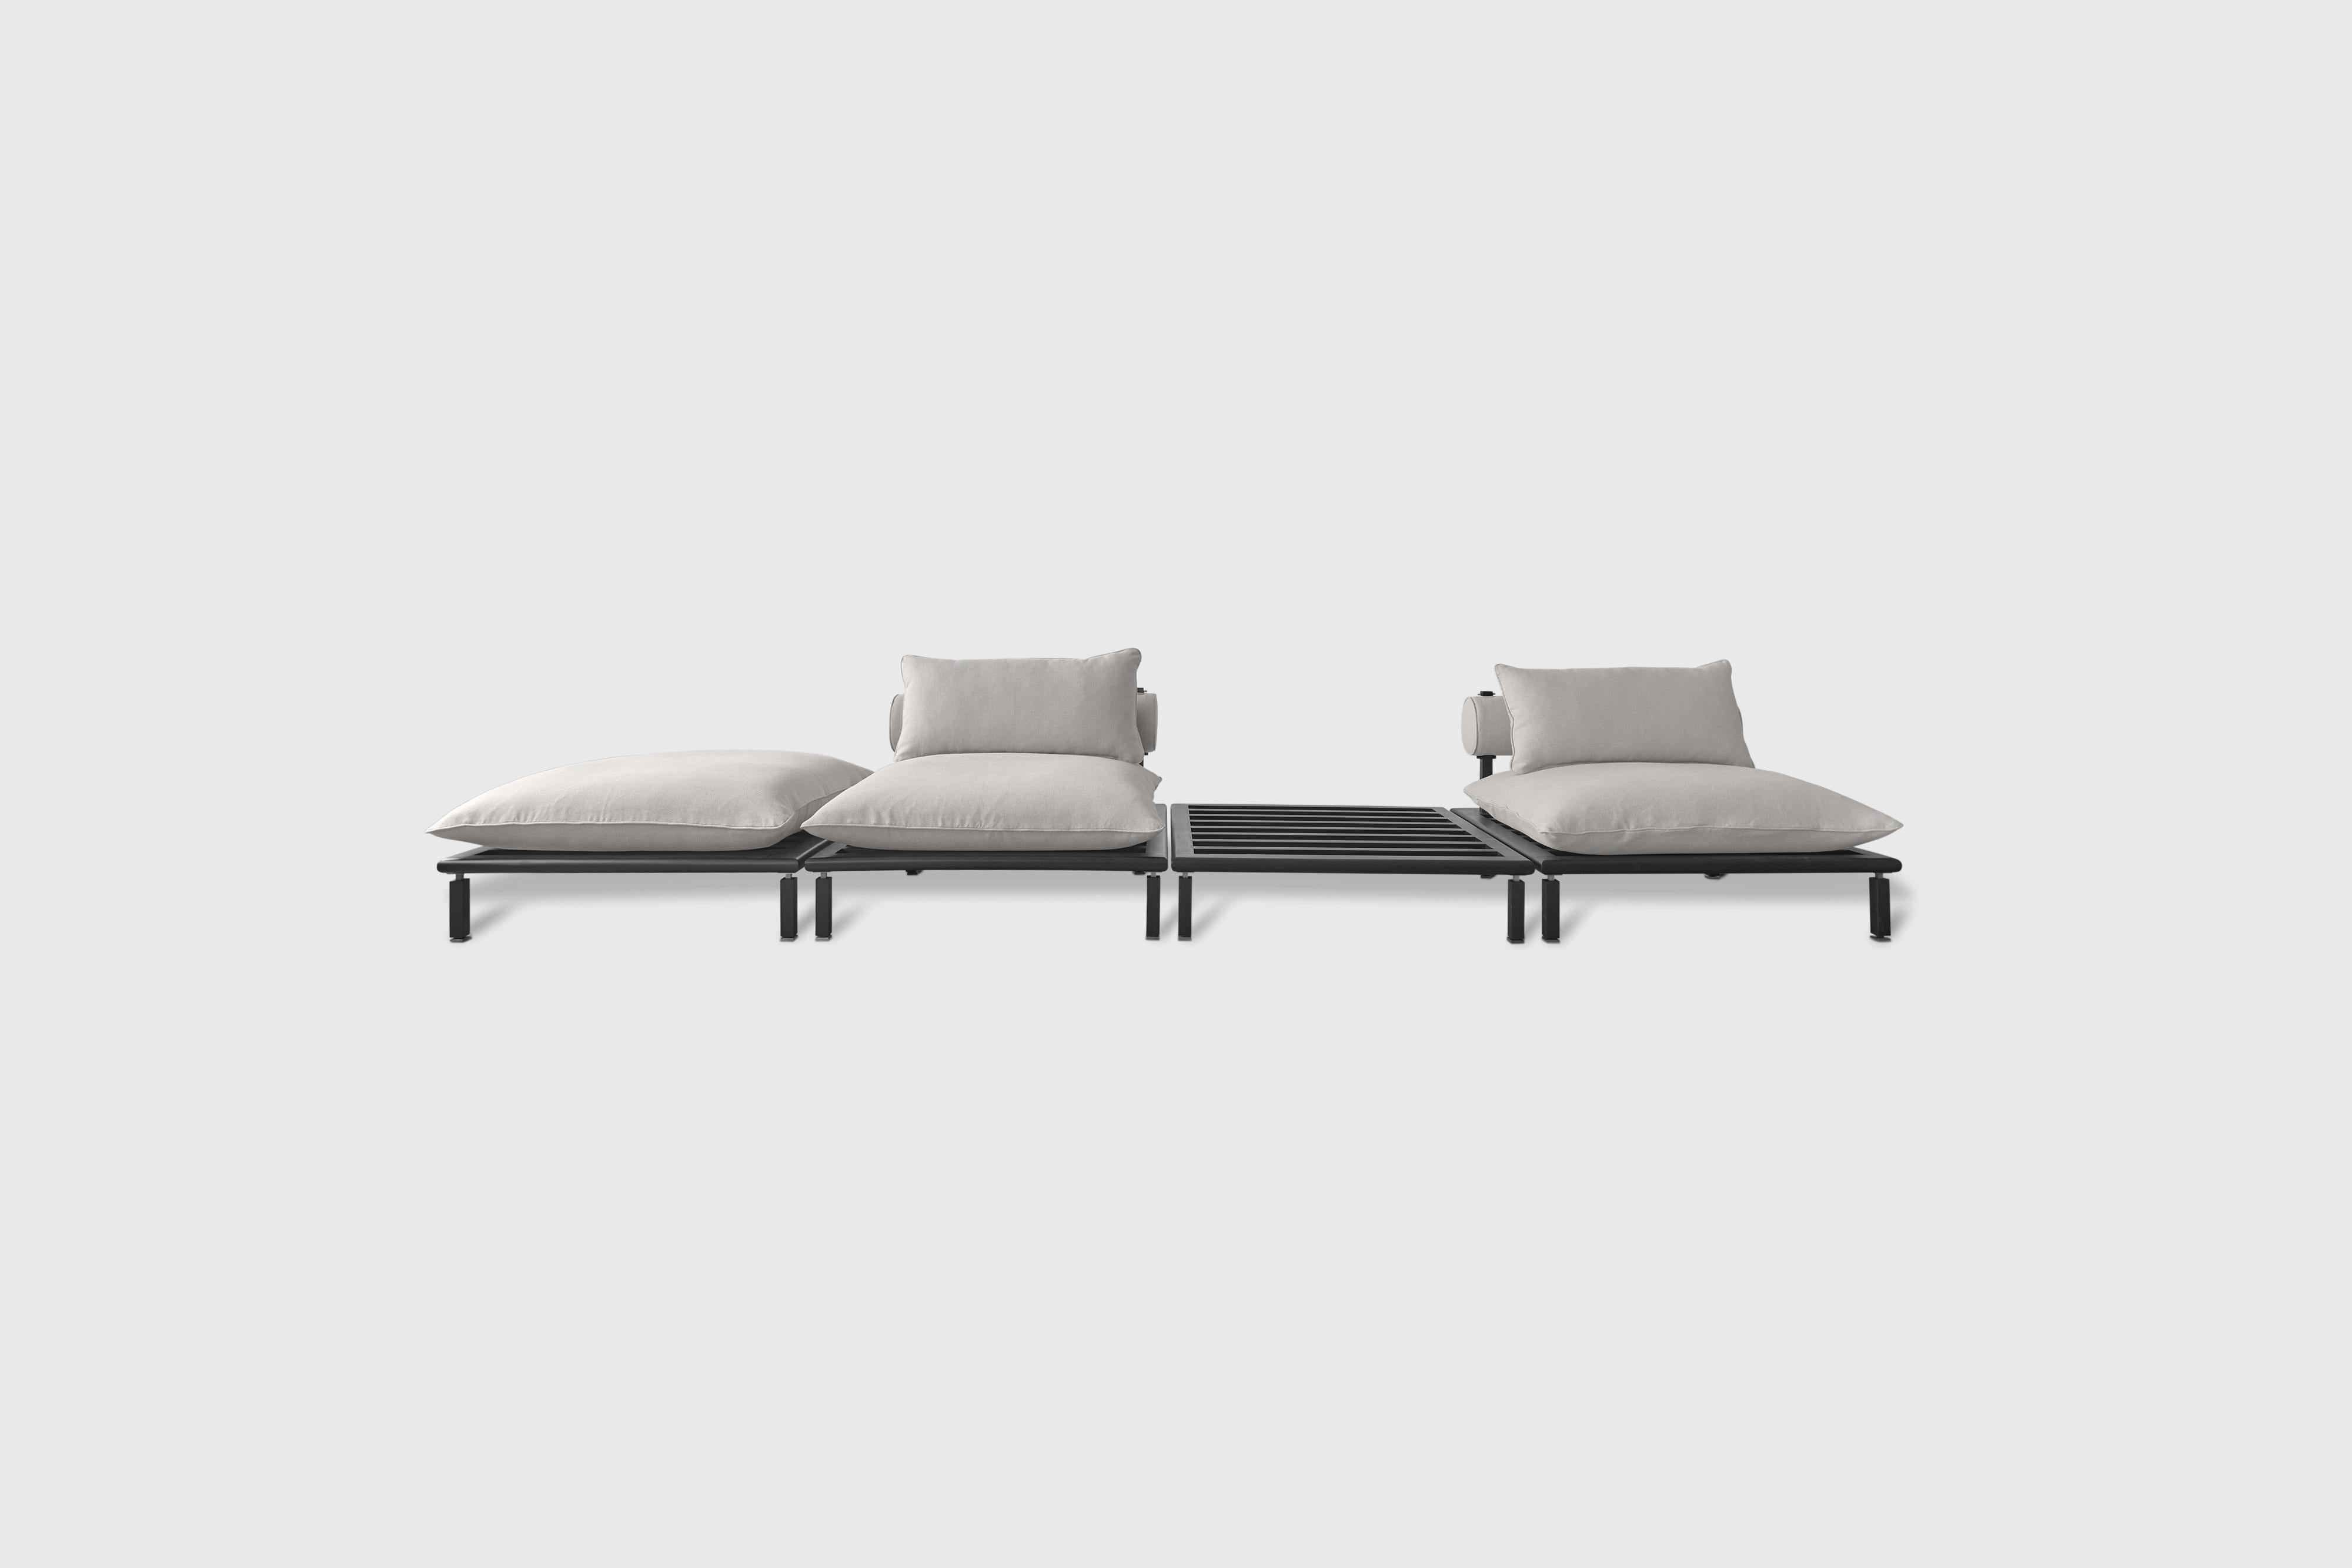 Mexican Nerthus Sofa by Atra Design